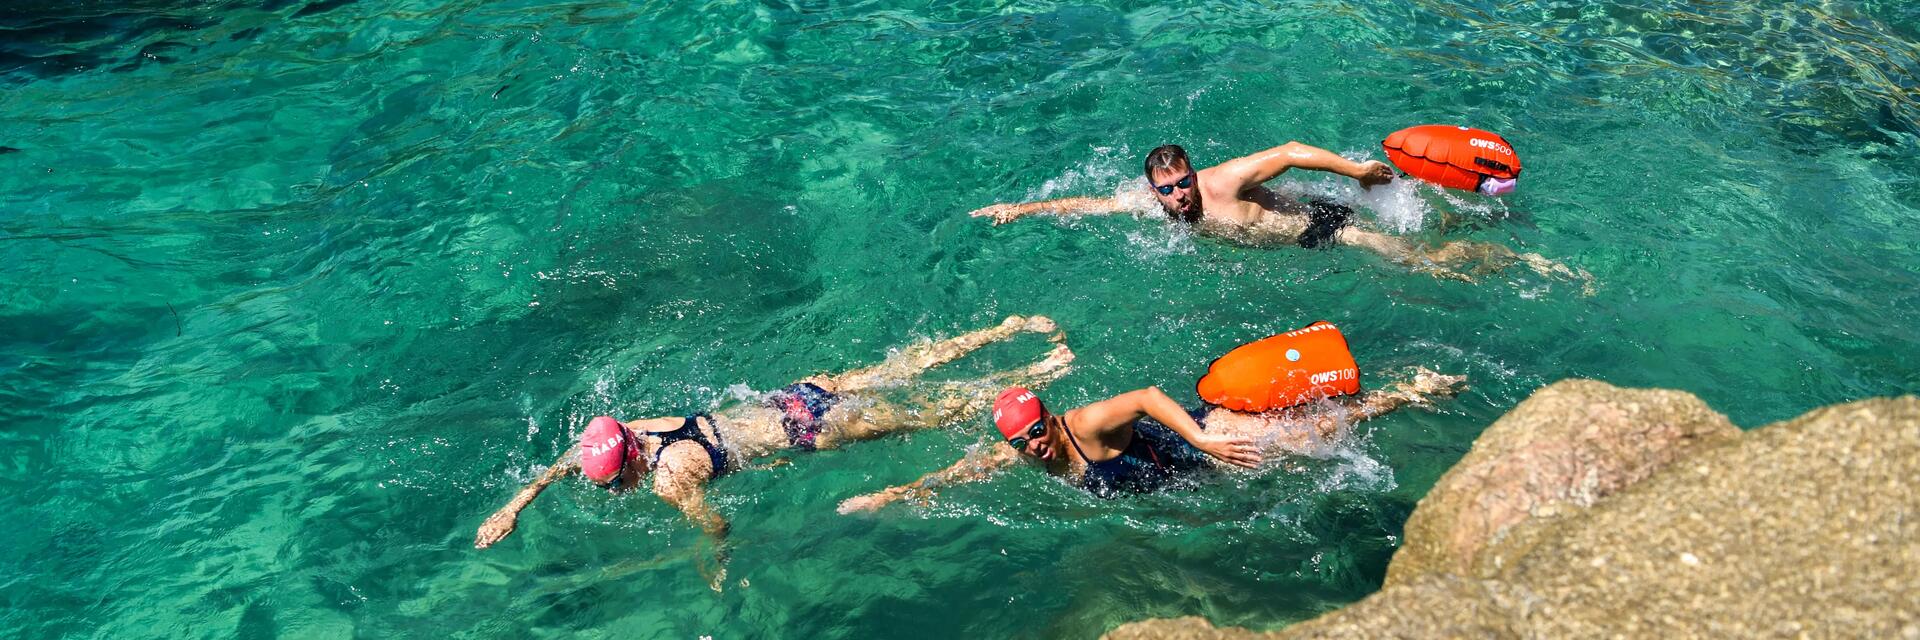 Sportowcy pływający w morzu z bojką asekuracyjną z suchą komorą